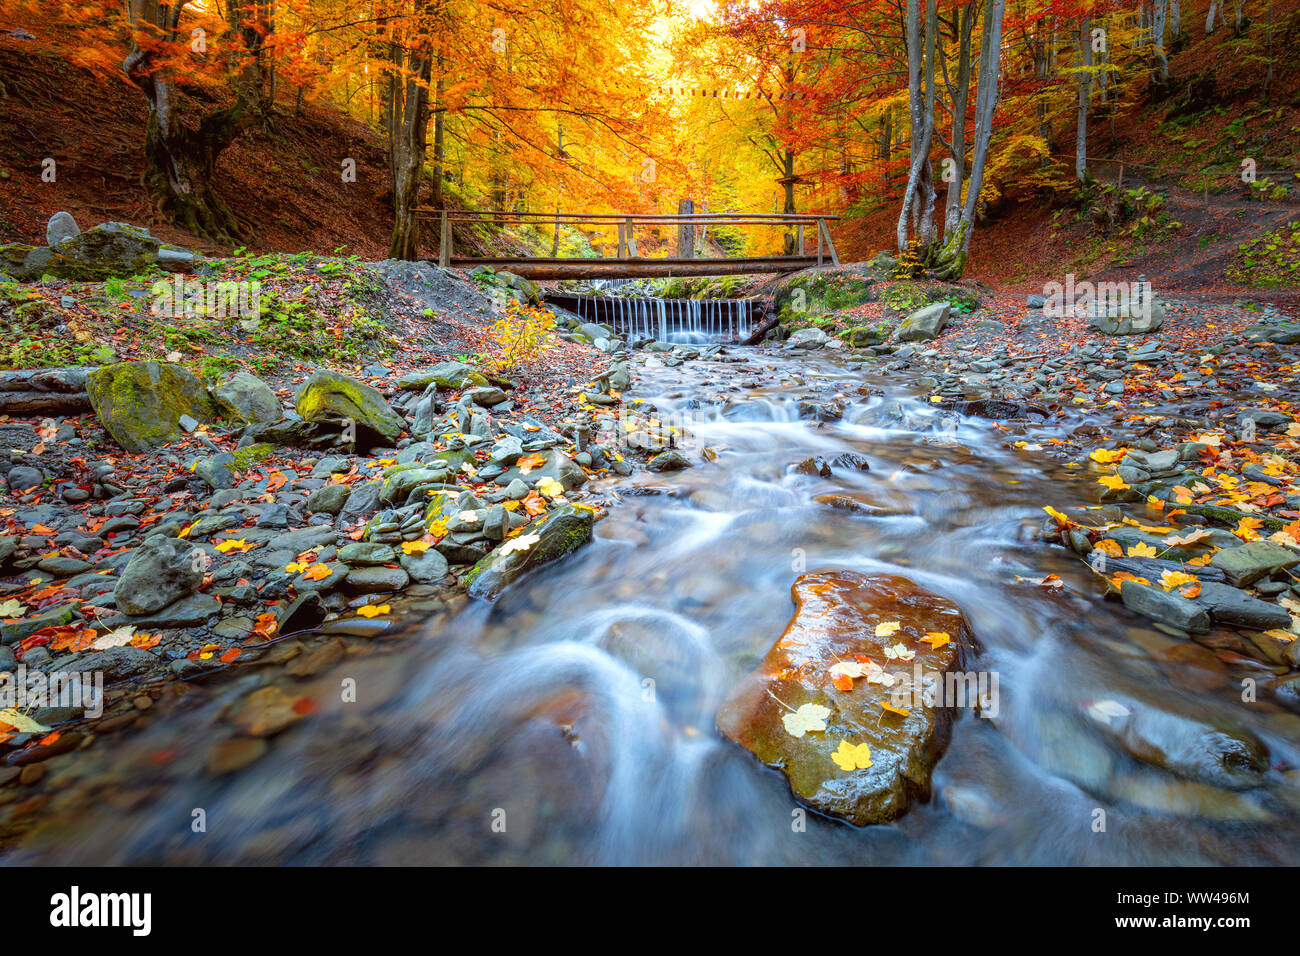 En automne étonnant parc de forêt - arbres colorés, petit pont de bois et de pierres de la rivière rapide, paysage d'automne Banque D'Images